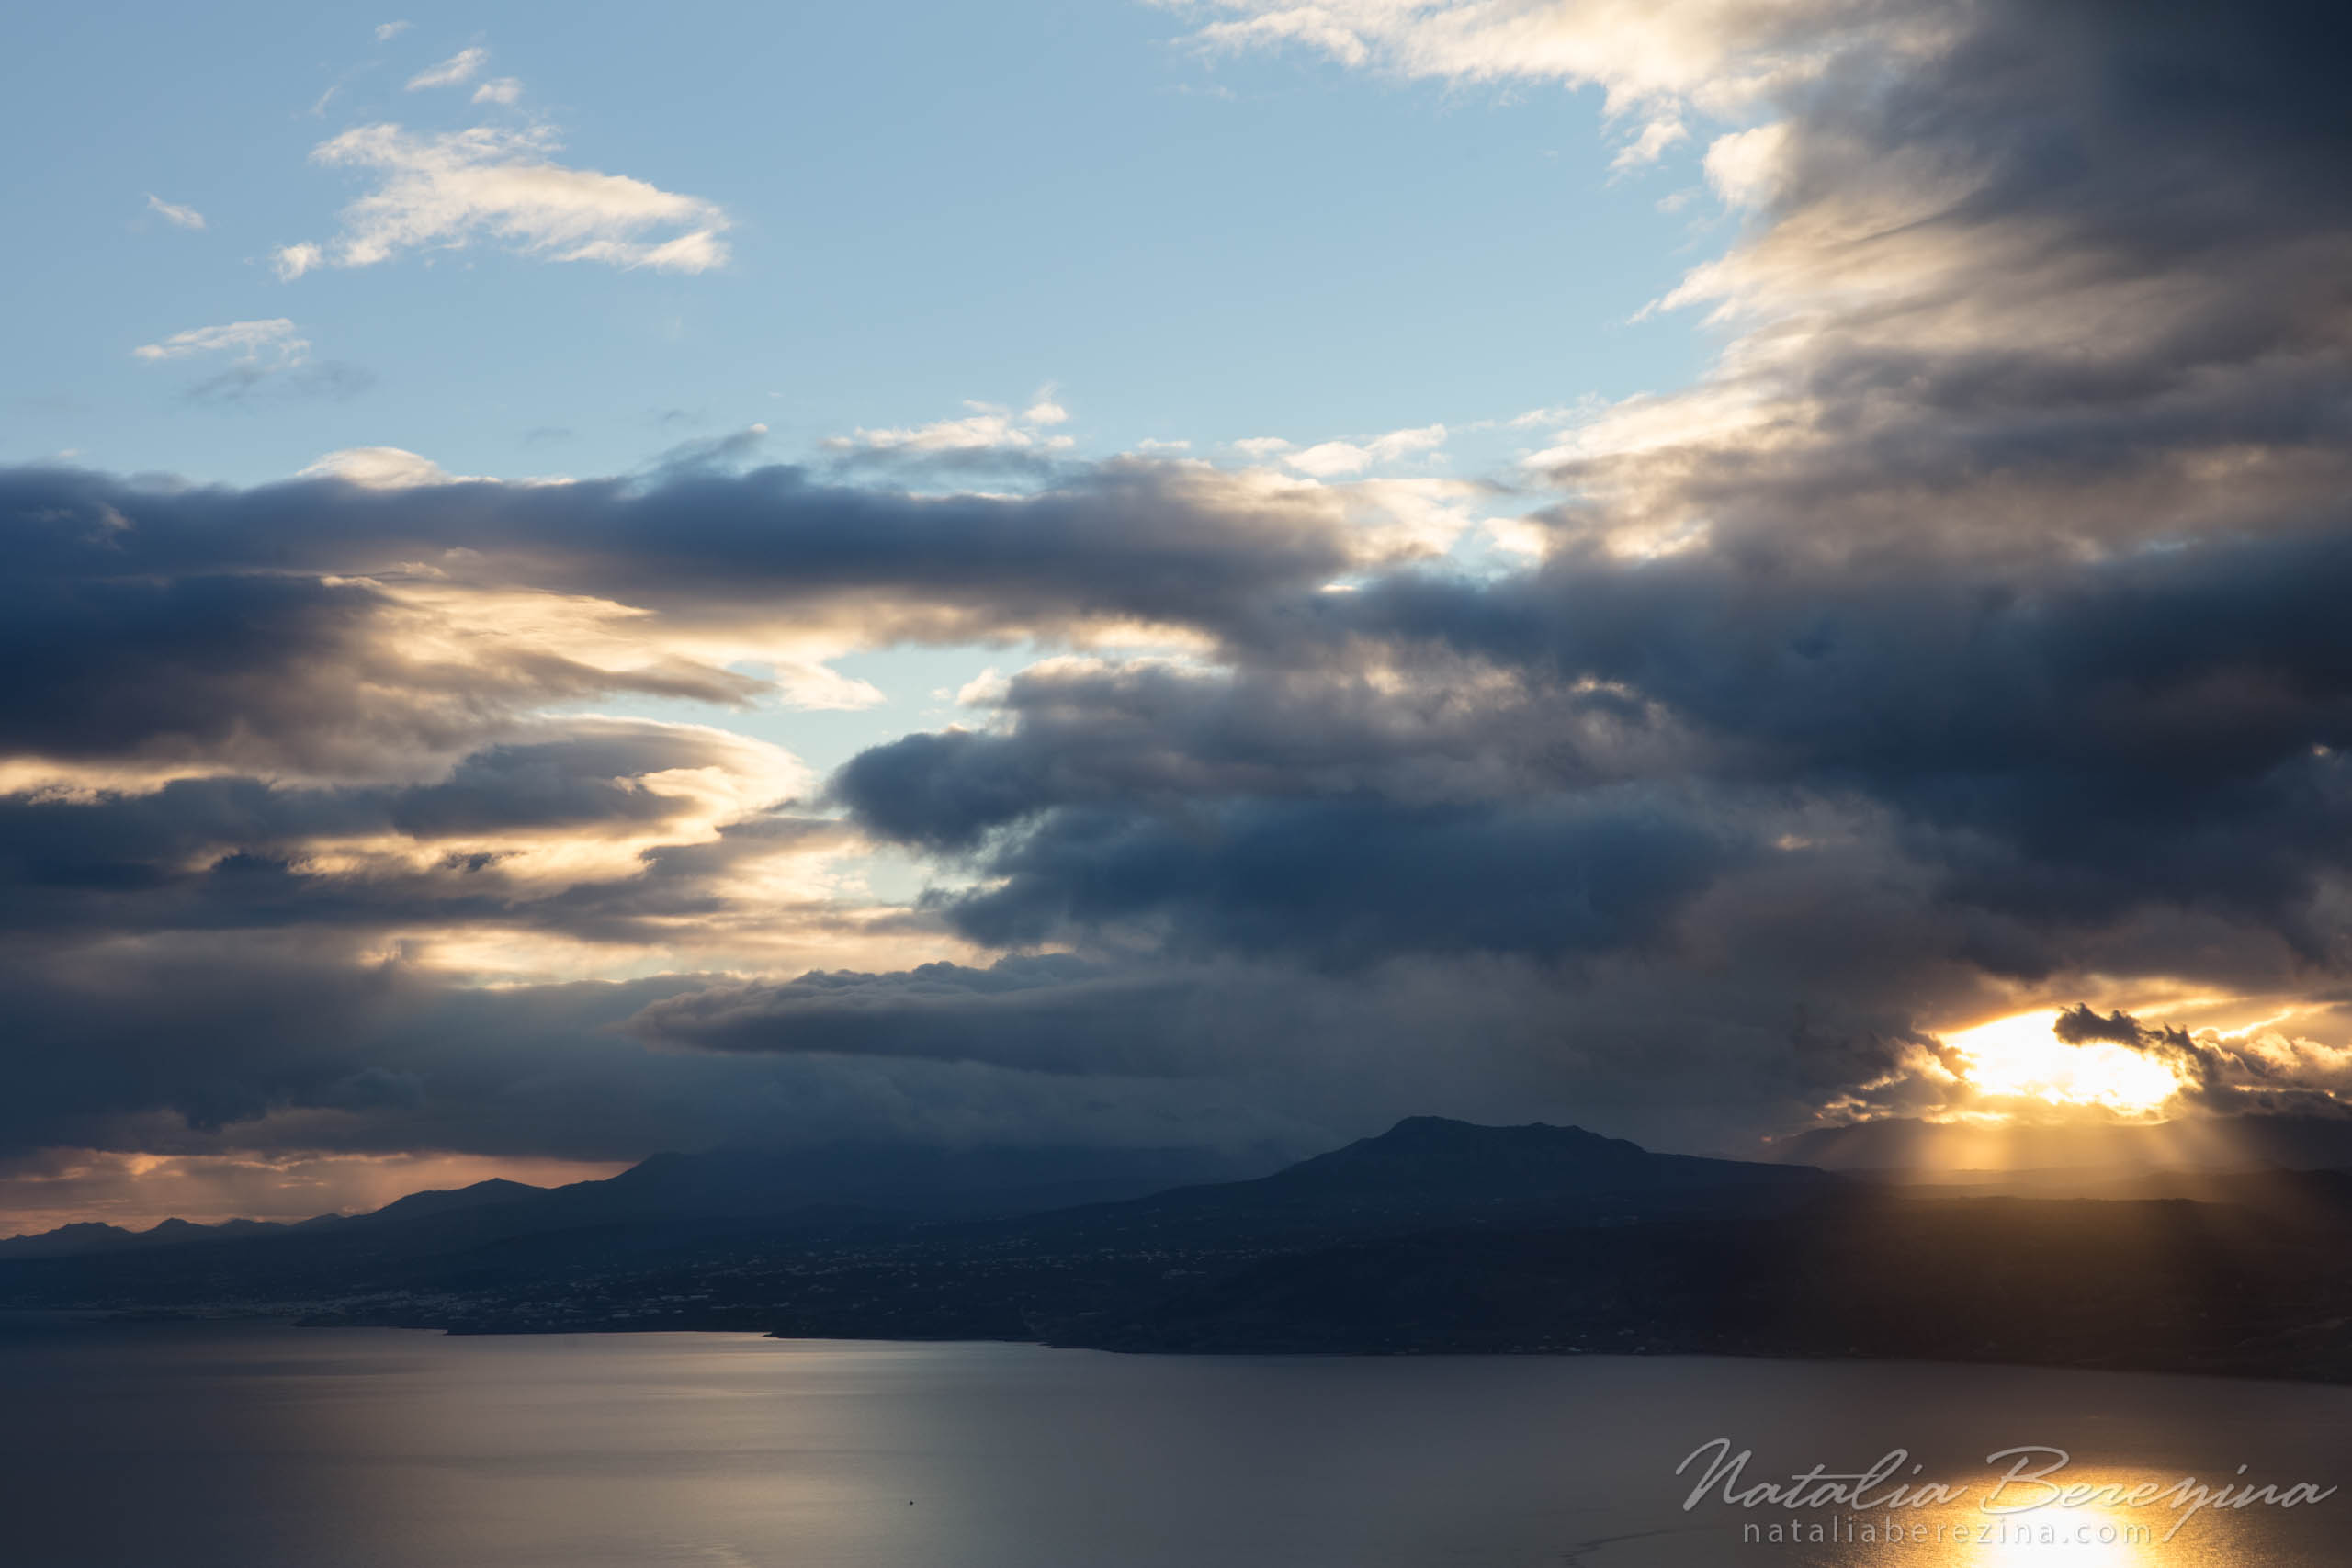 Greece, Crete, landscape, sea, sunrise, cloud, skyline, sunlight CR1-NB0B4A9054 - Crete, Greece - Natalia Berezina Photography